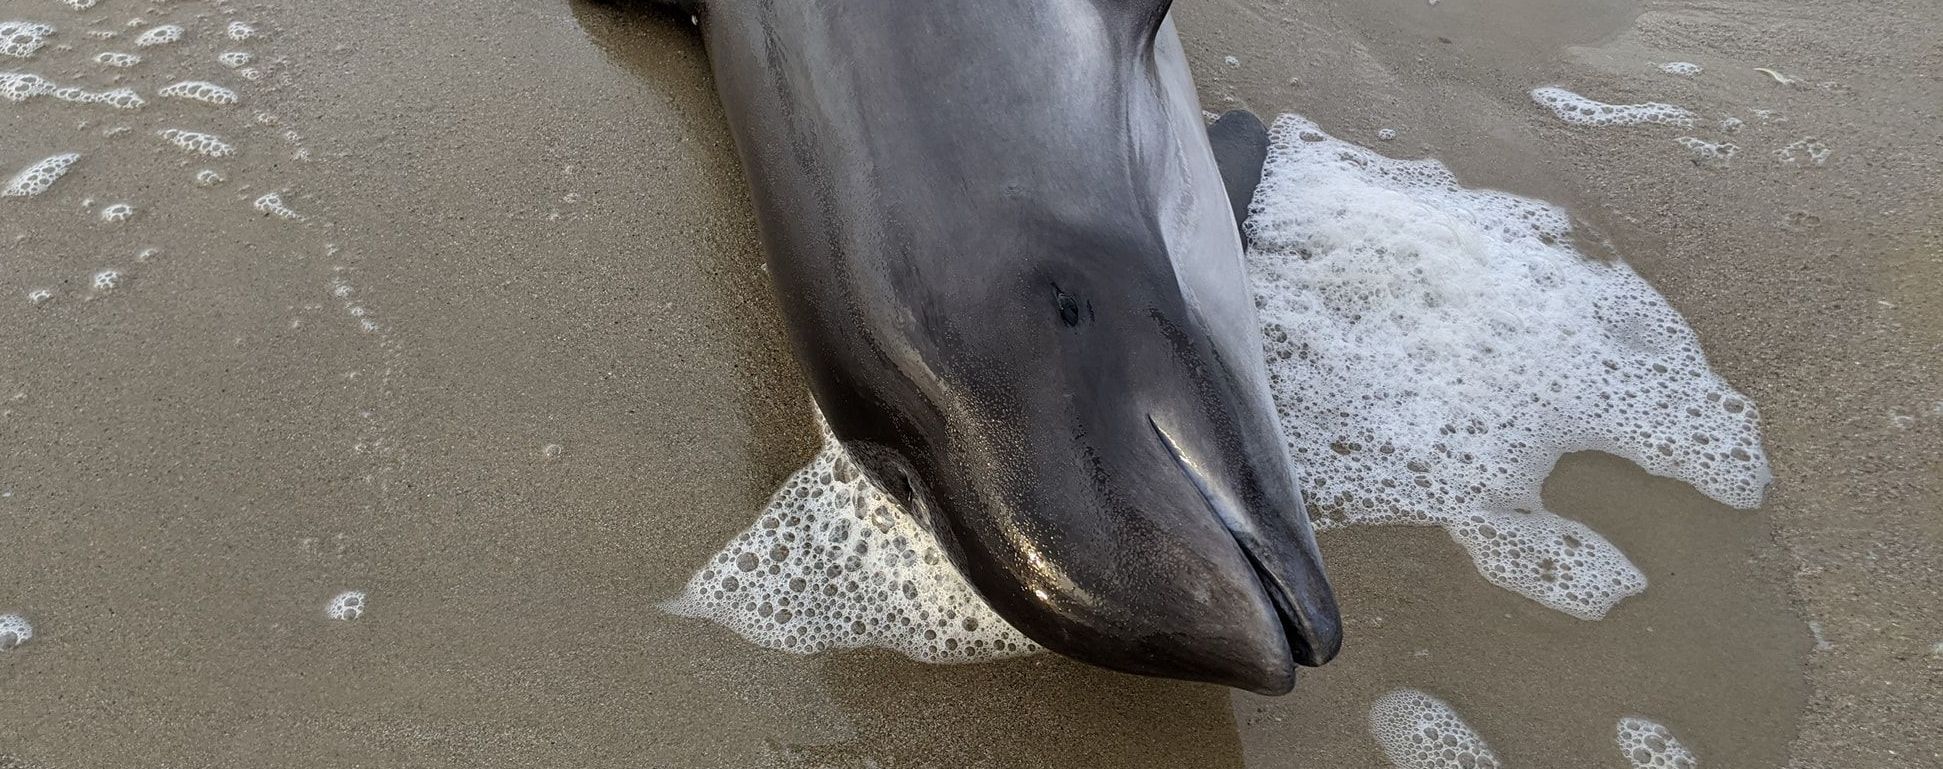 В Одессе на побережье нашли мертвого дельфина и рыбу: опубликовали фото